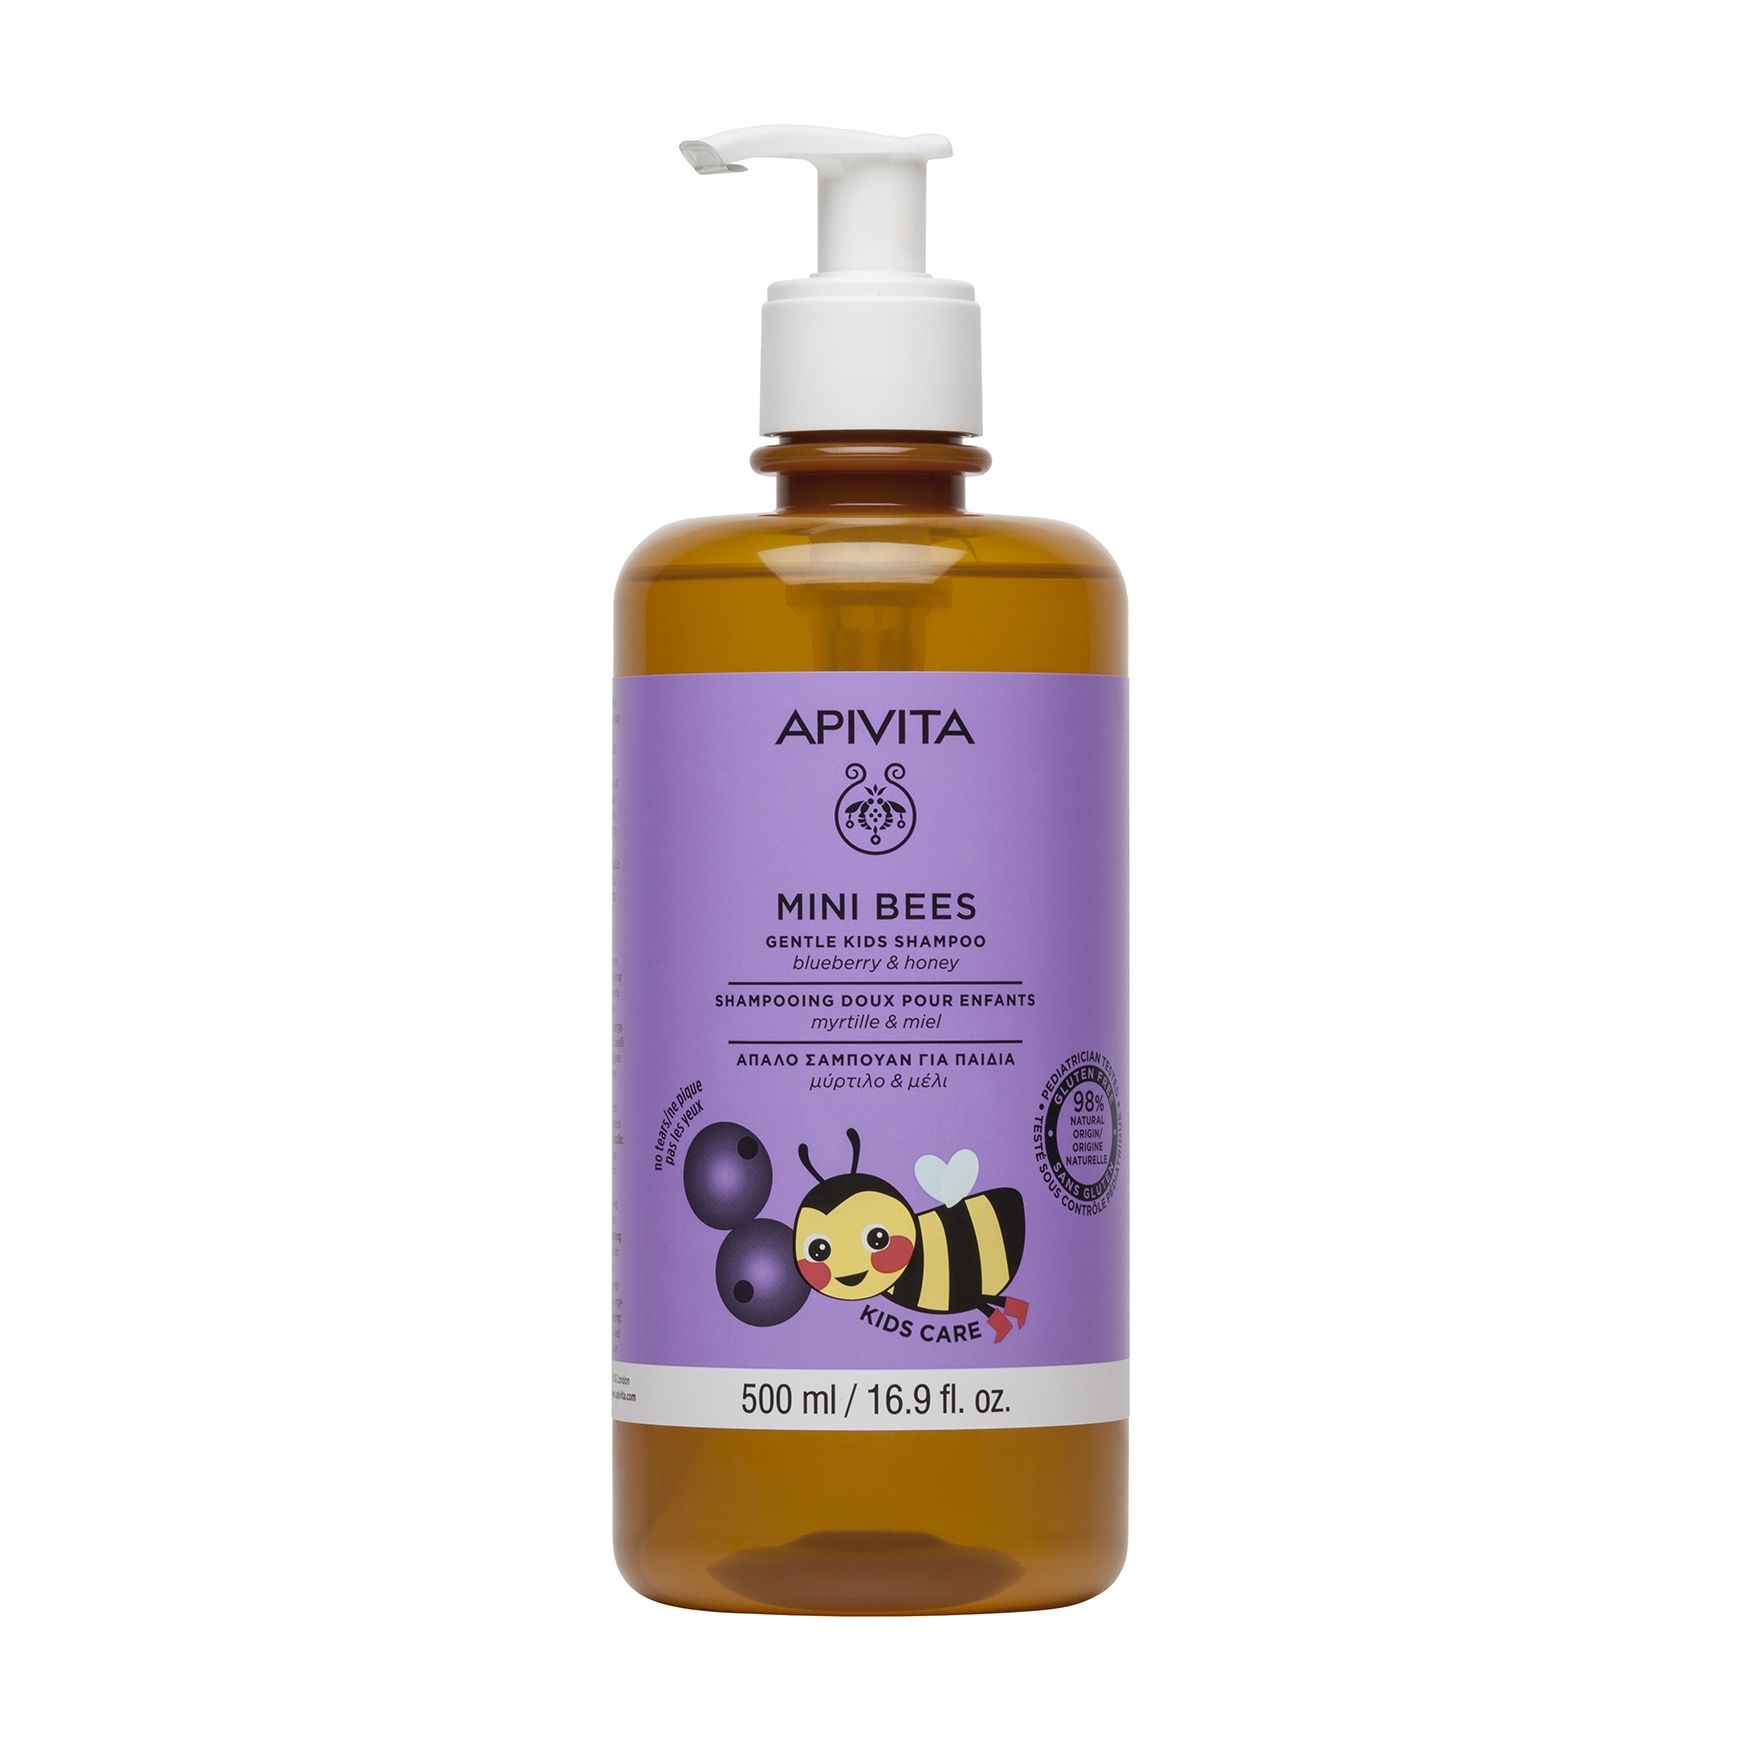 Нежный шампунь для волос Apivita Mini Bees Gentle Kids Shampoo с черникой и медом смолка жевательная таблетки живица с черникой 0 8 г 5 шт